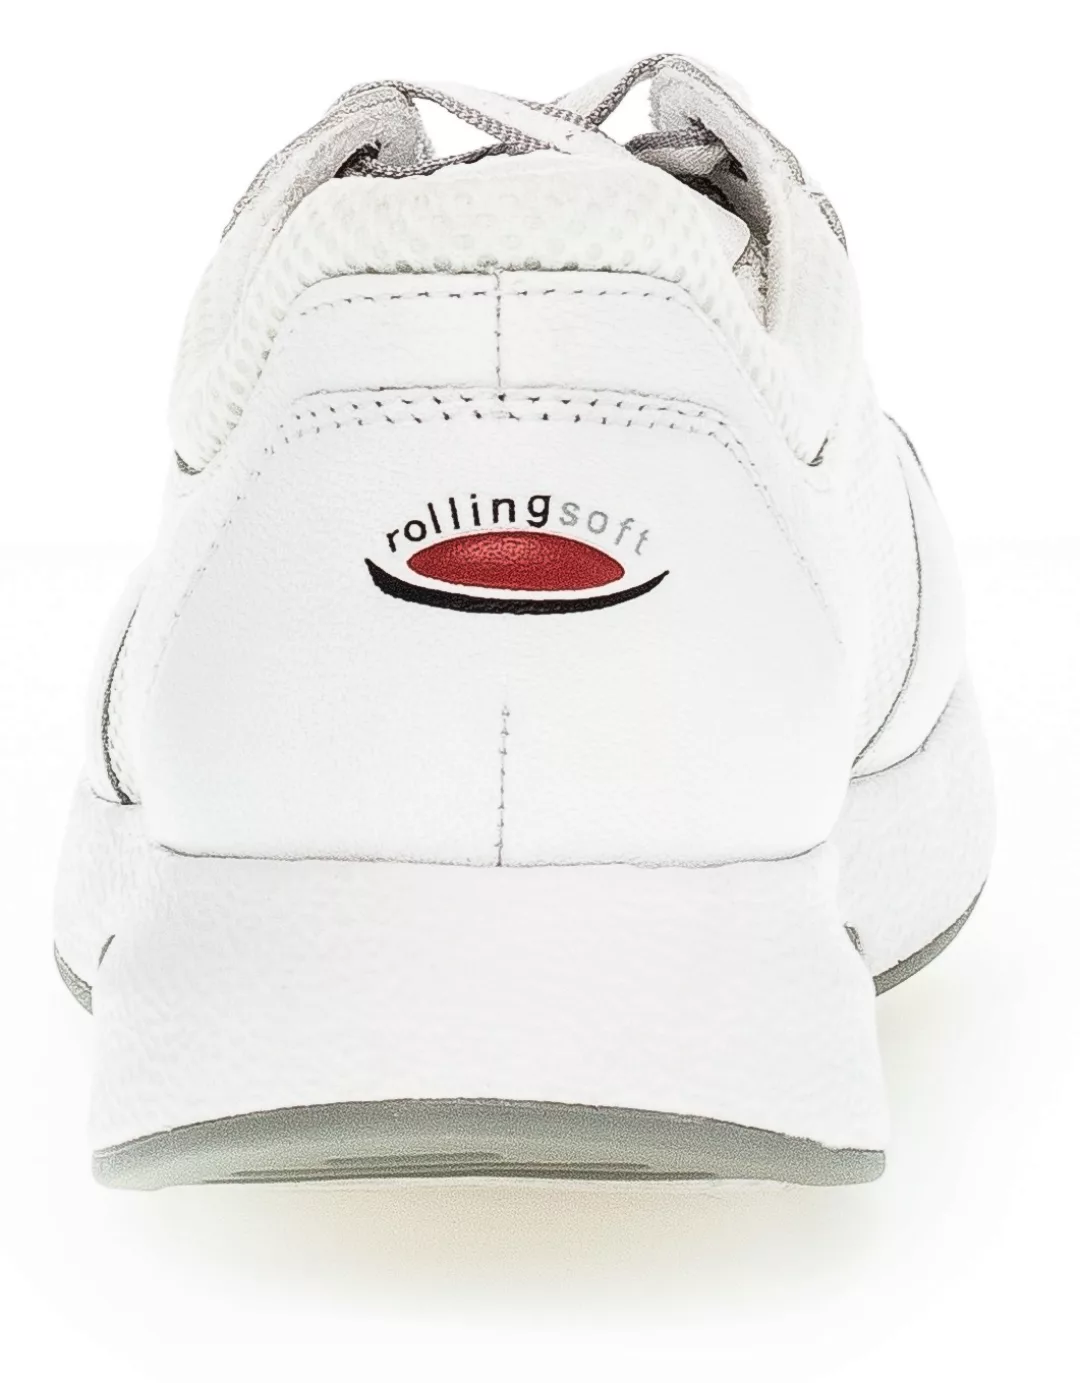 Gabor Rollingsoft Keilsneaker, mit Label an der Ferse, Freizeitschuh, Halbs günstig online kaufen